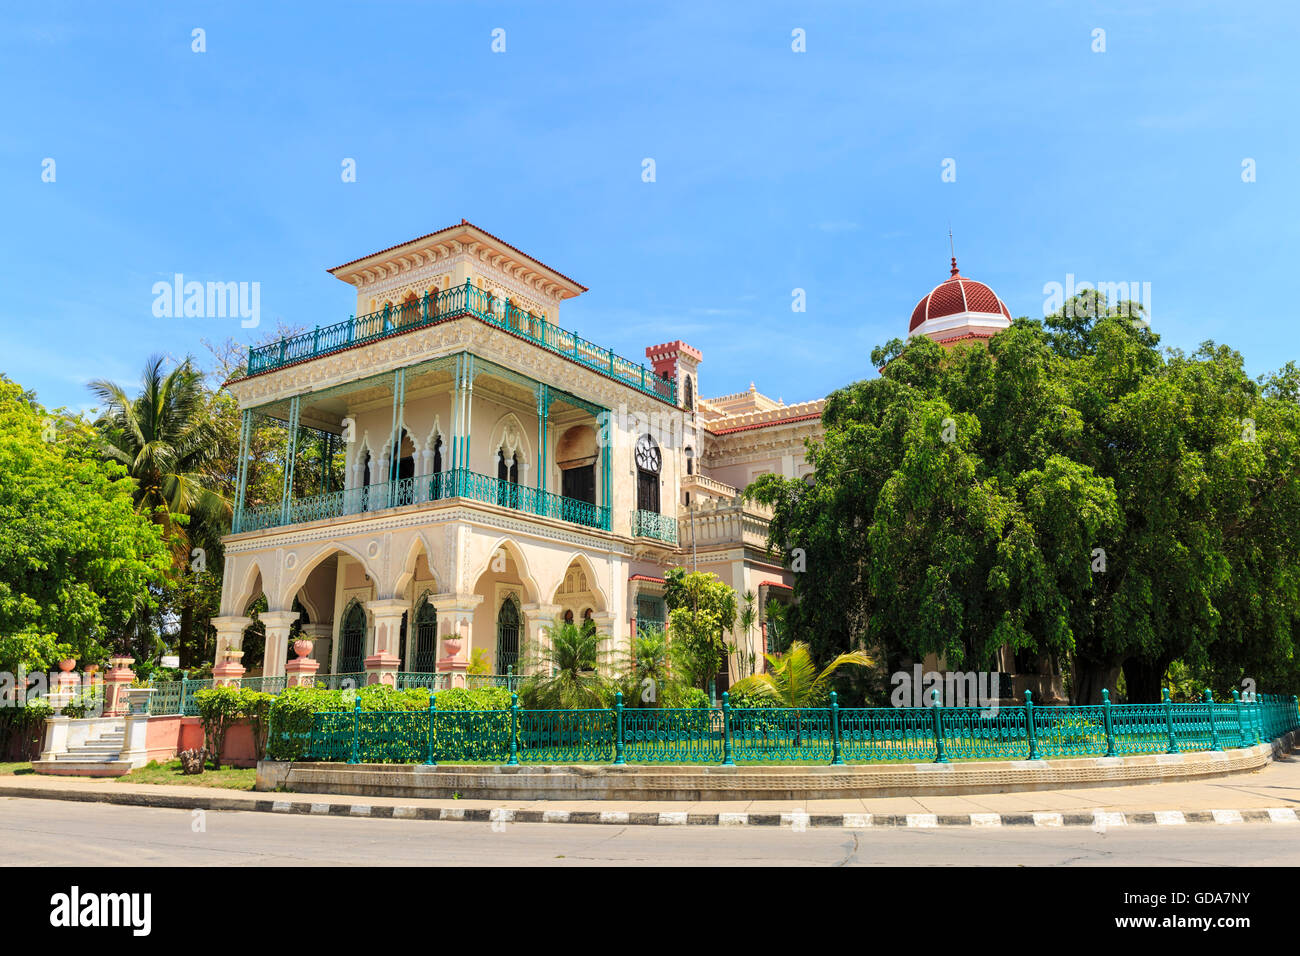 Palacio de Valle, Cienfuegos, Cuba Stock Photo